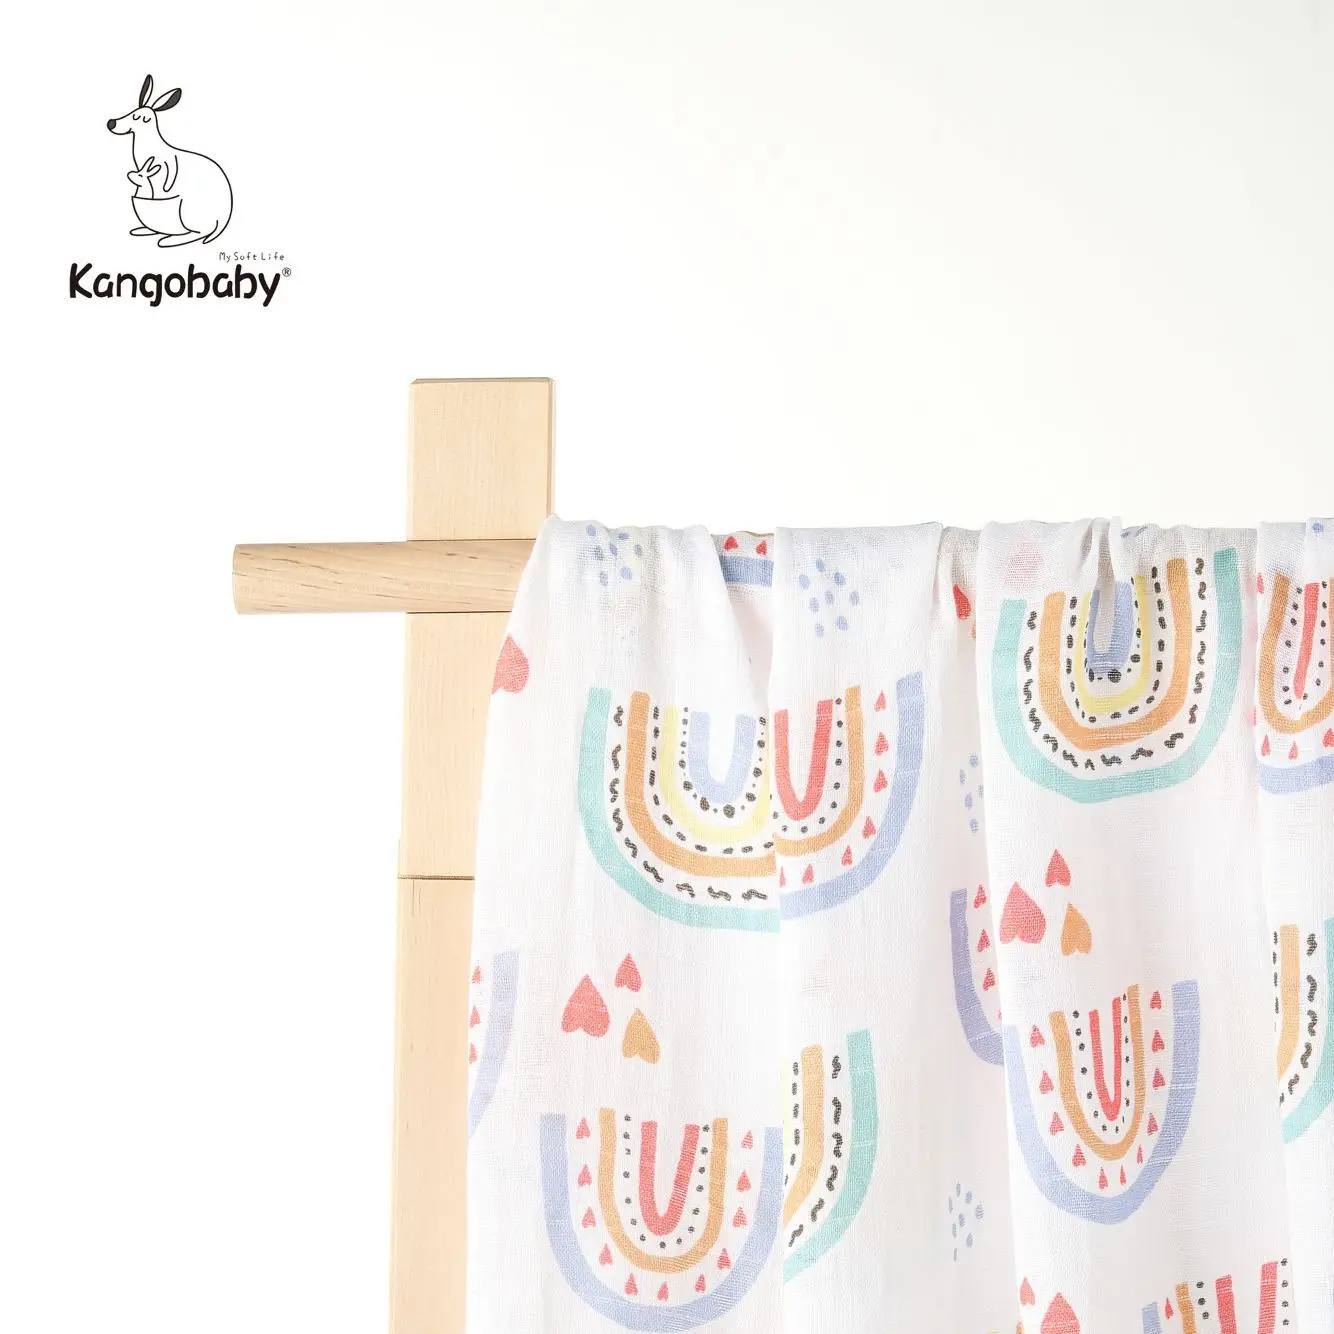 Kangobaby70 % бамбук + 30% хлопок детские пеленки обертывания муслиновые одеяла для